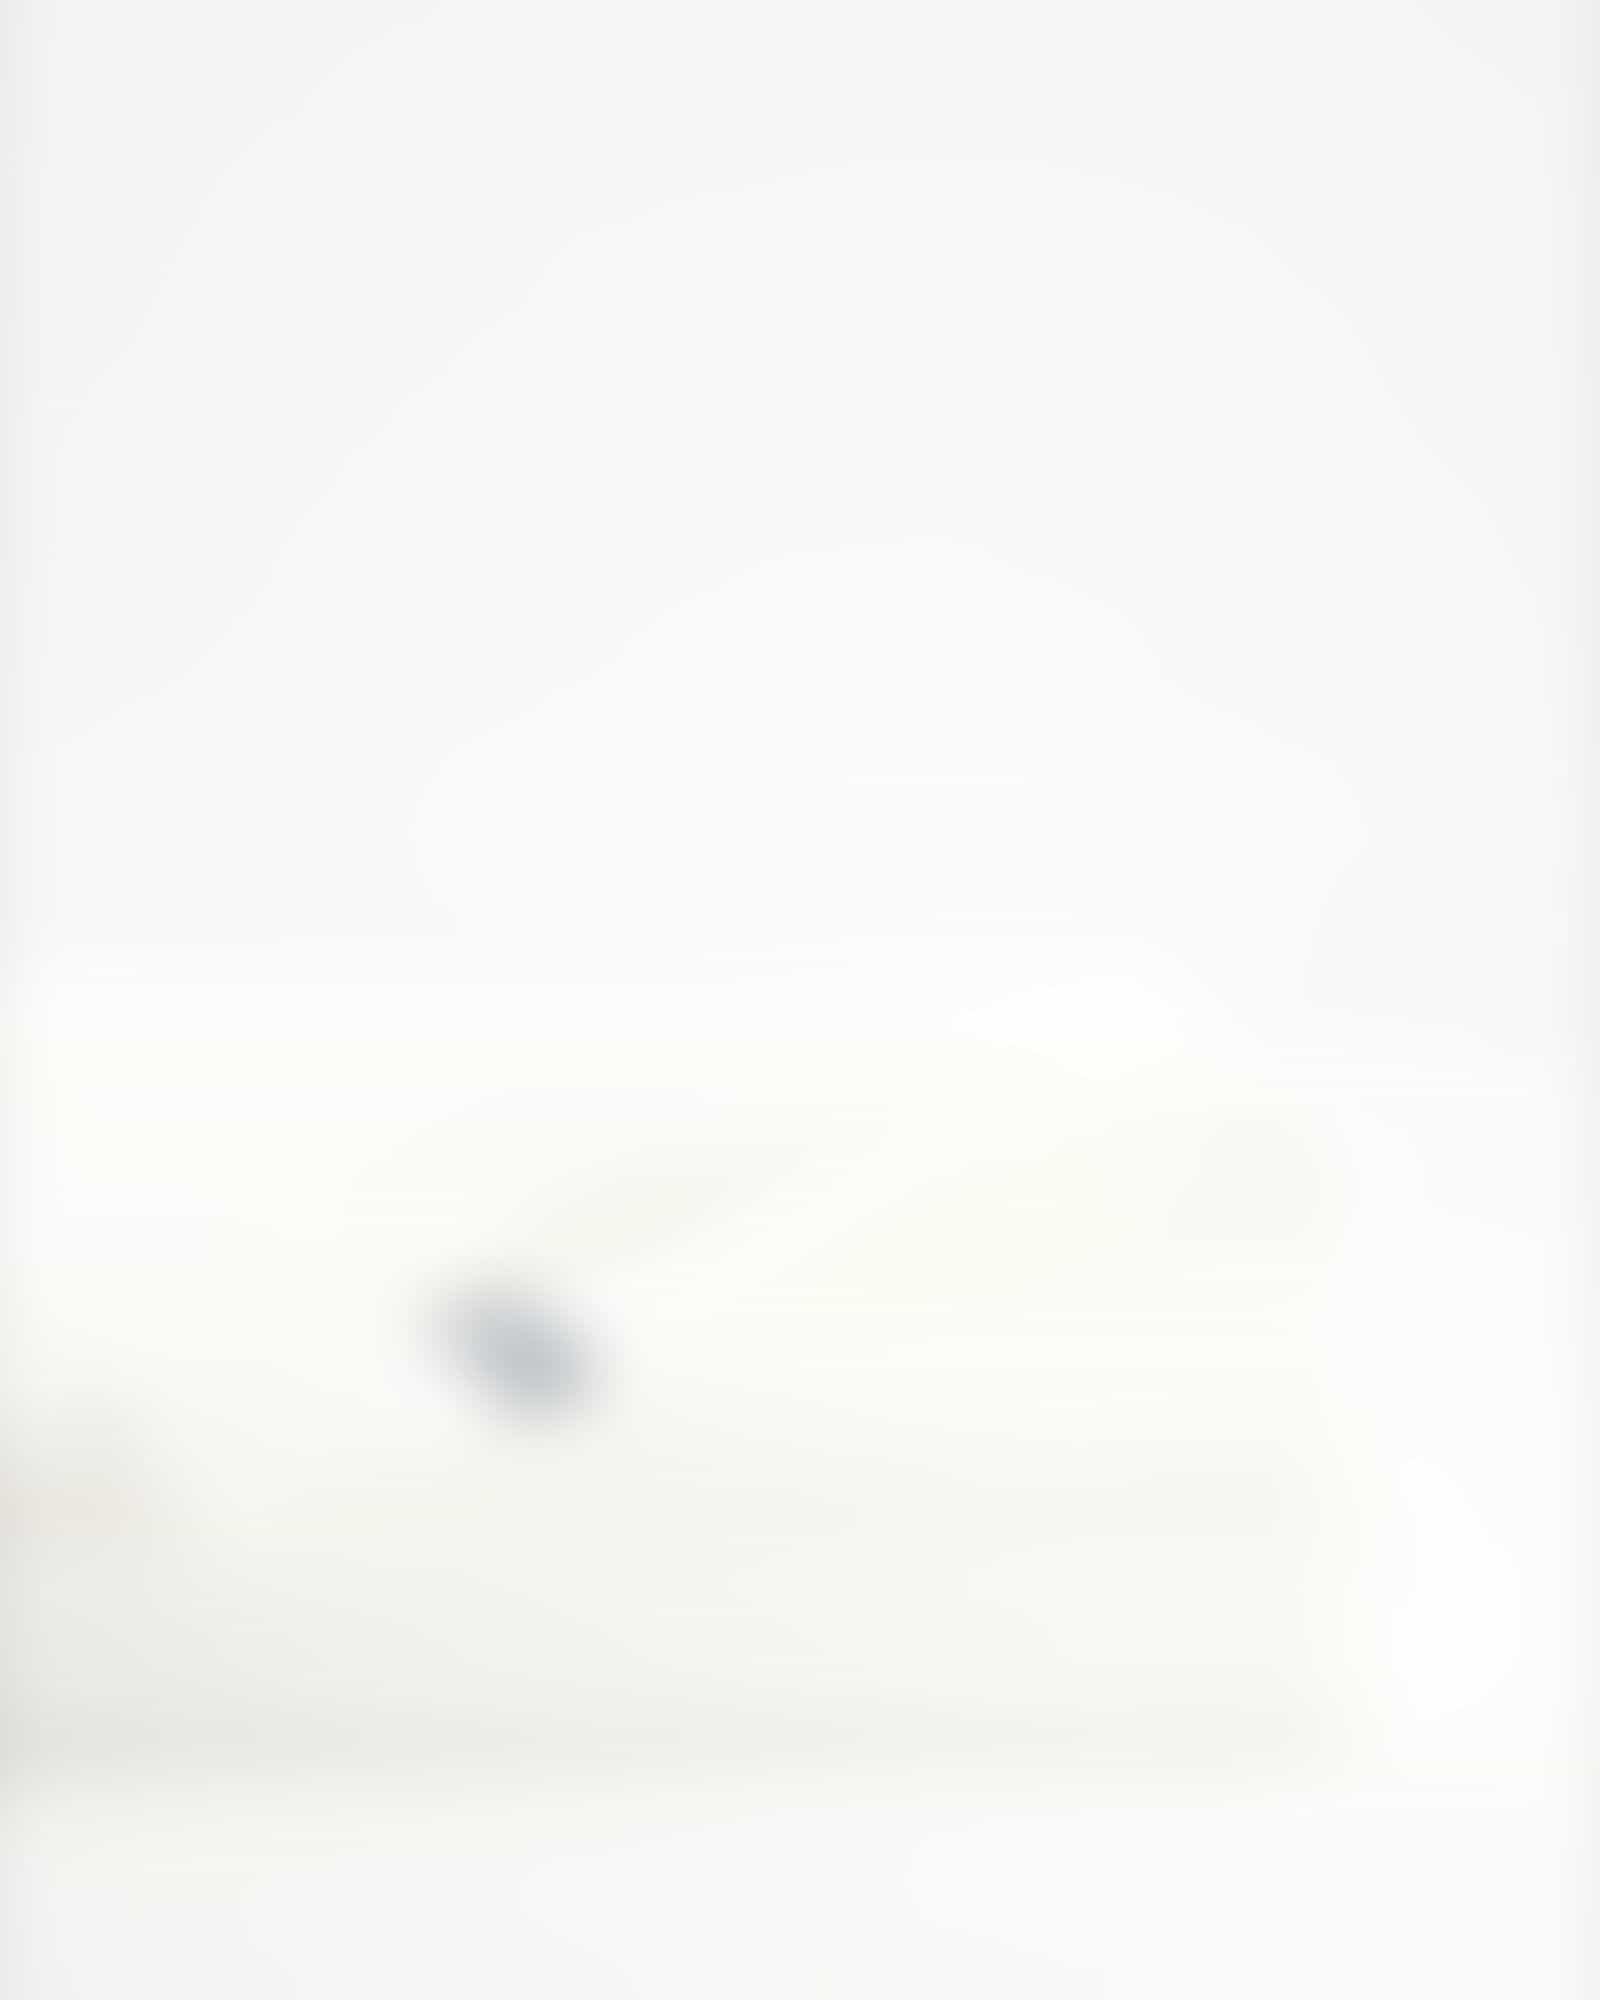 Möve - Waffelpiquée - Farbe: snow - 001 (1-0605/8762) - Duschtuch 70x140 cm